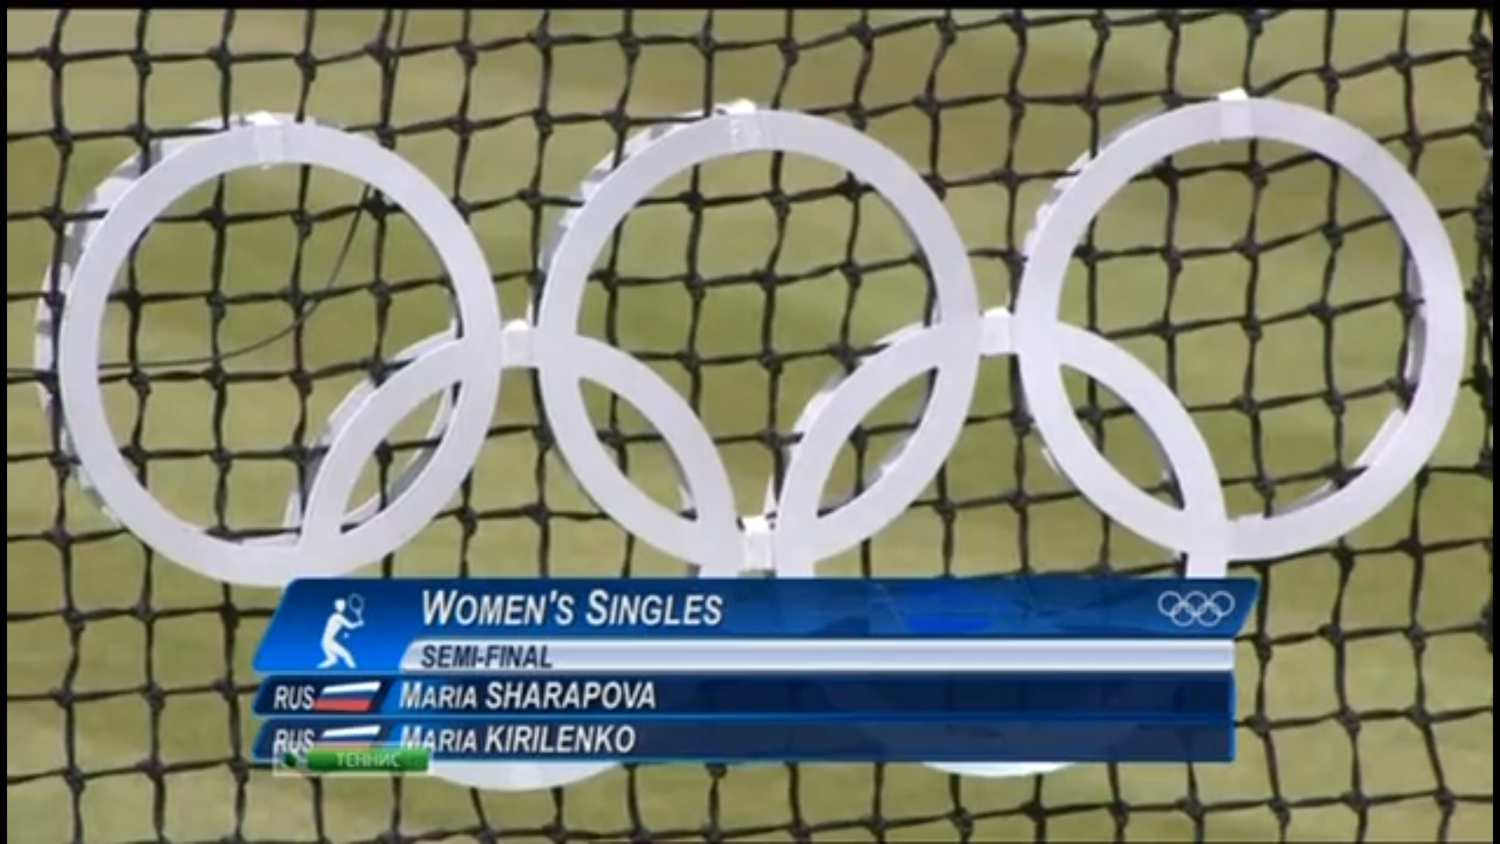 Теннис на Олимпийских играх 2012. 1/2 финала. Мария Шарапова - Мария Кириленко